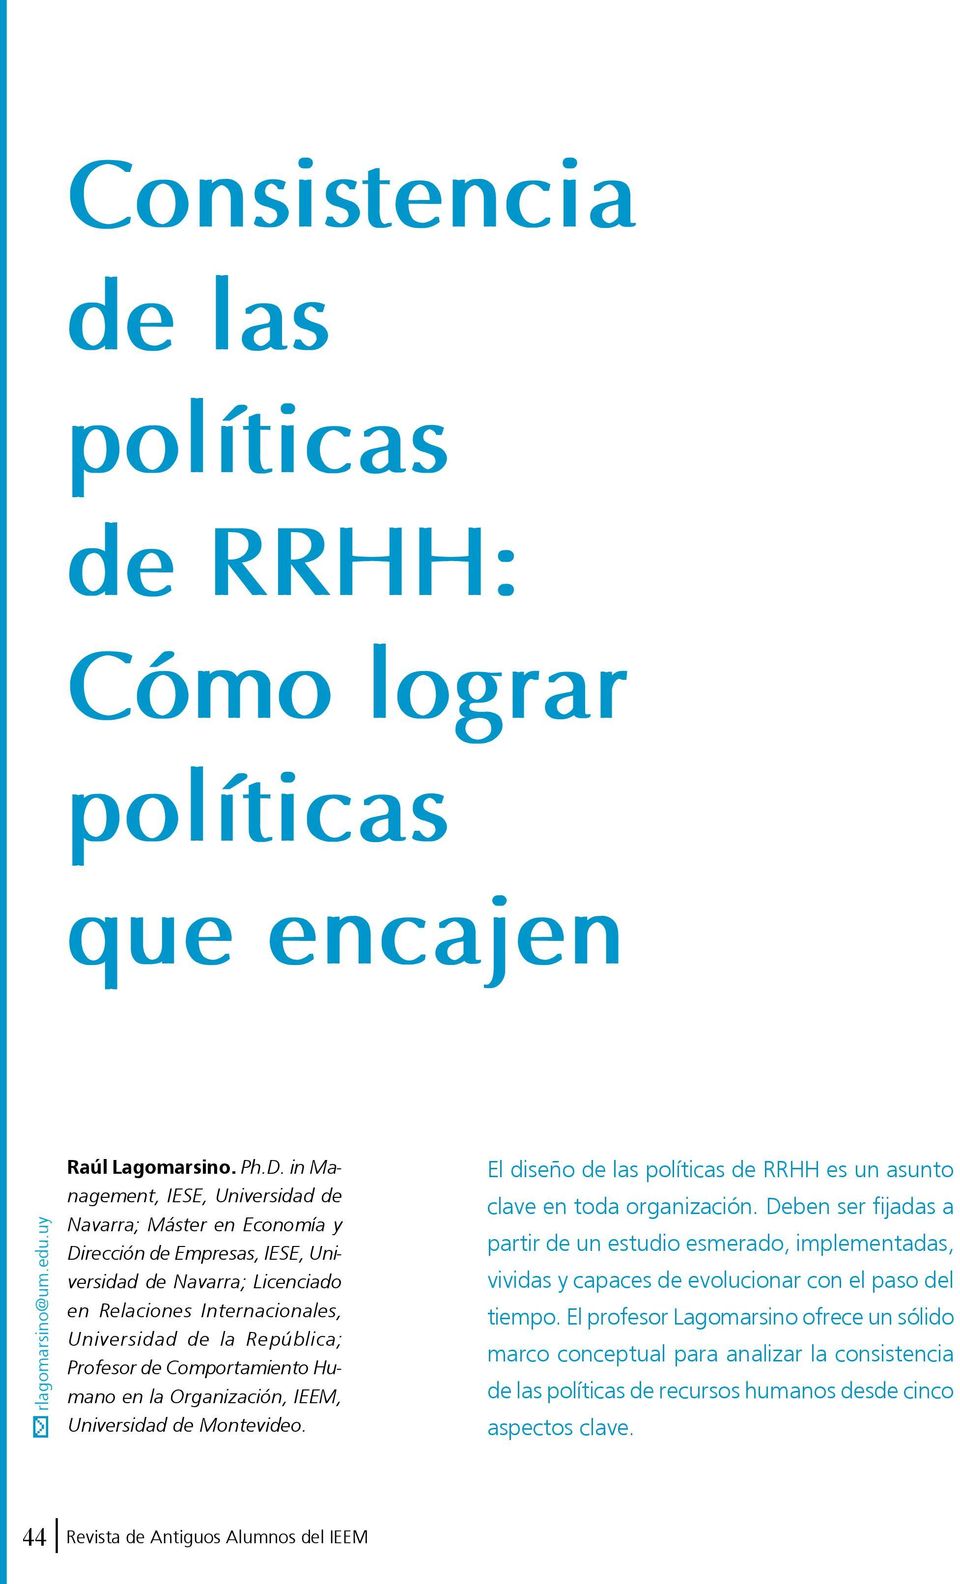 República; Profesor de Comportamiento Humano en la Organización, IEEM, Universidad de Montevideo. El diseño de las políticas de RRHH es un asunto clave en toda organización.